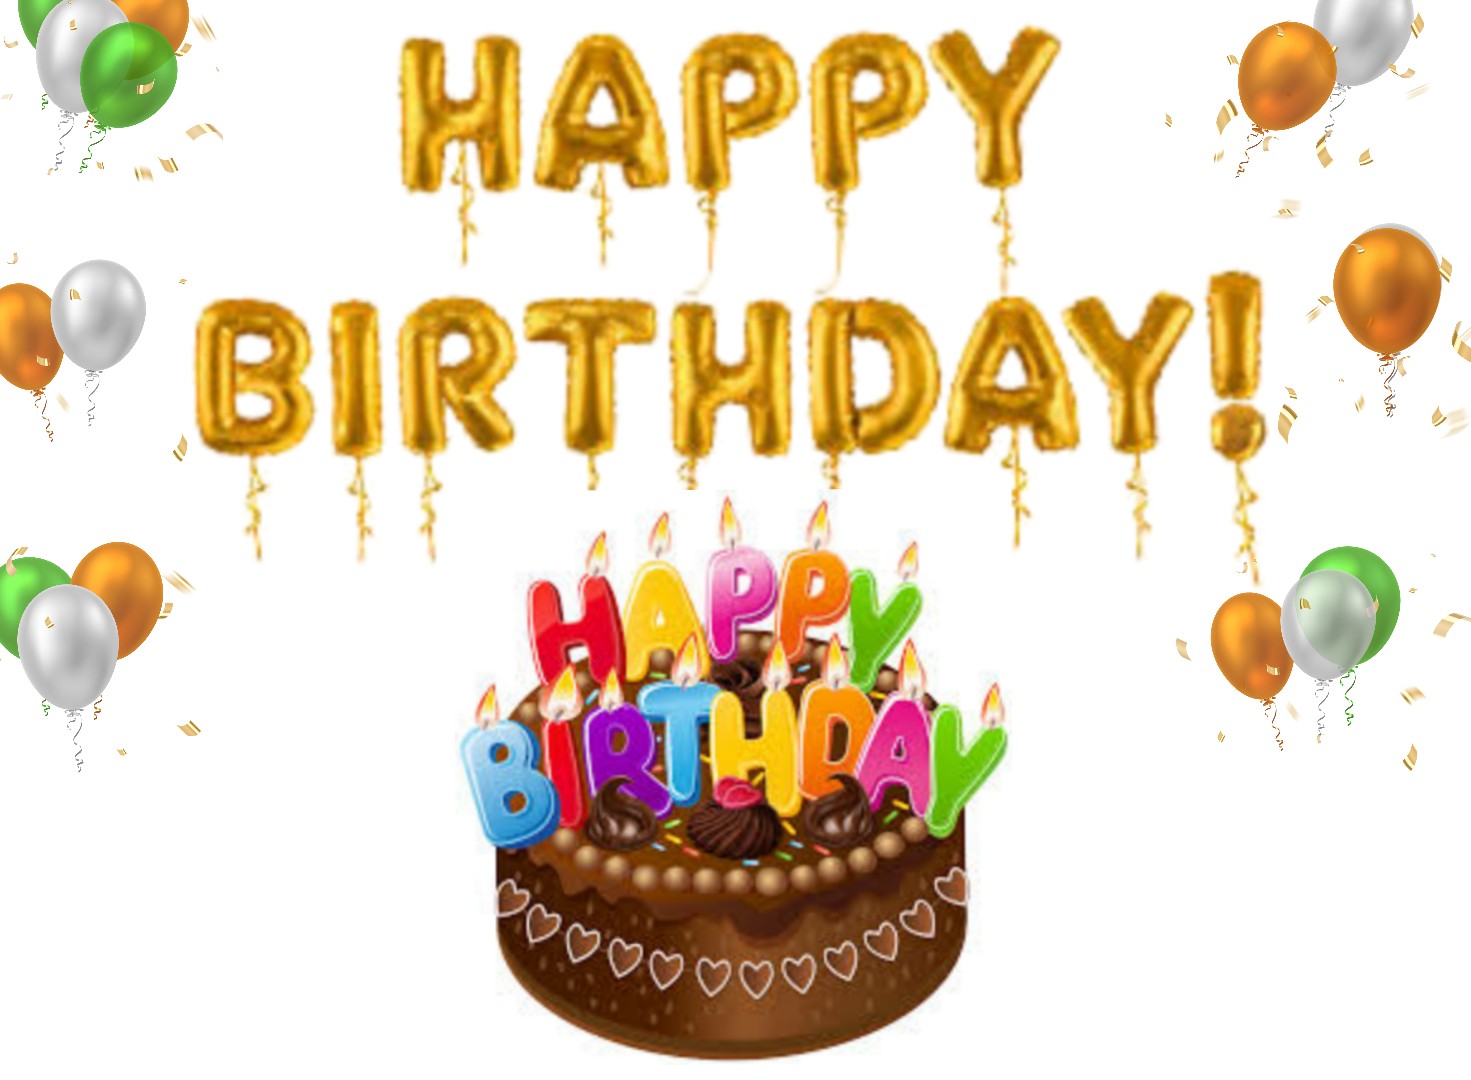 10+ Best Happy birthday photo | birthday wishing status image free download